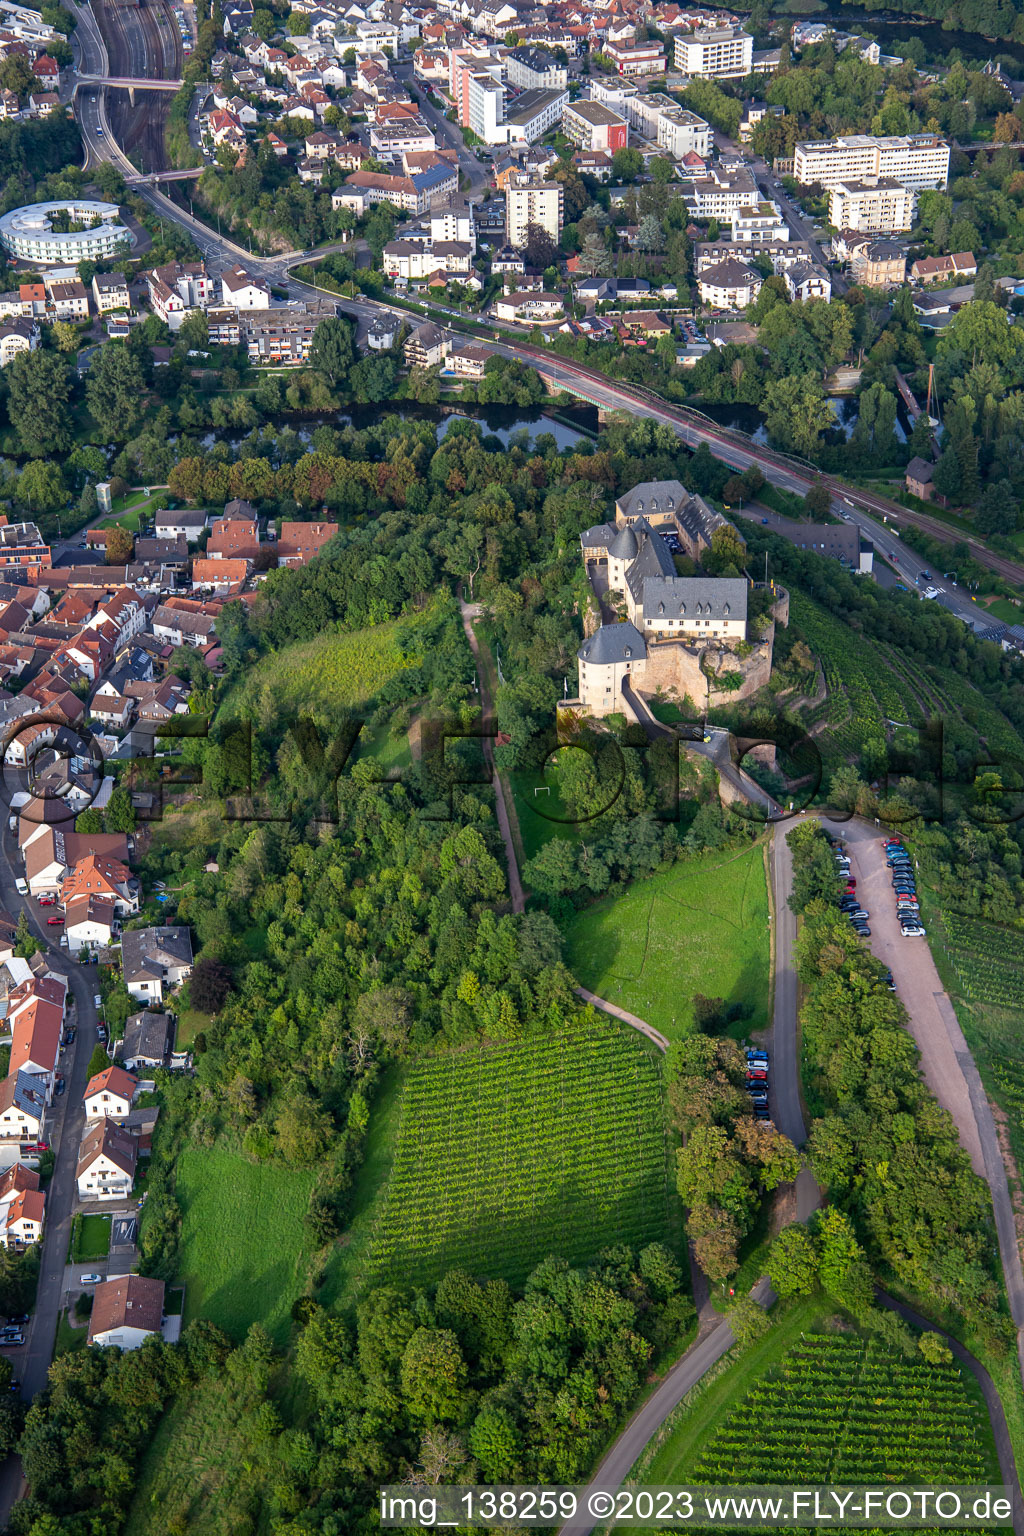 Vue oblique de Château Ebernburg / Centre de vacances et d'enseignement familial protestant Ebernburg à le quartier Ebernburg in Bad Kreuznach dans le département Rhénanie-Palatinat, Allemagne